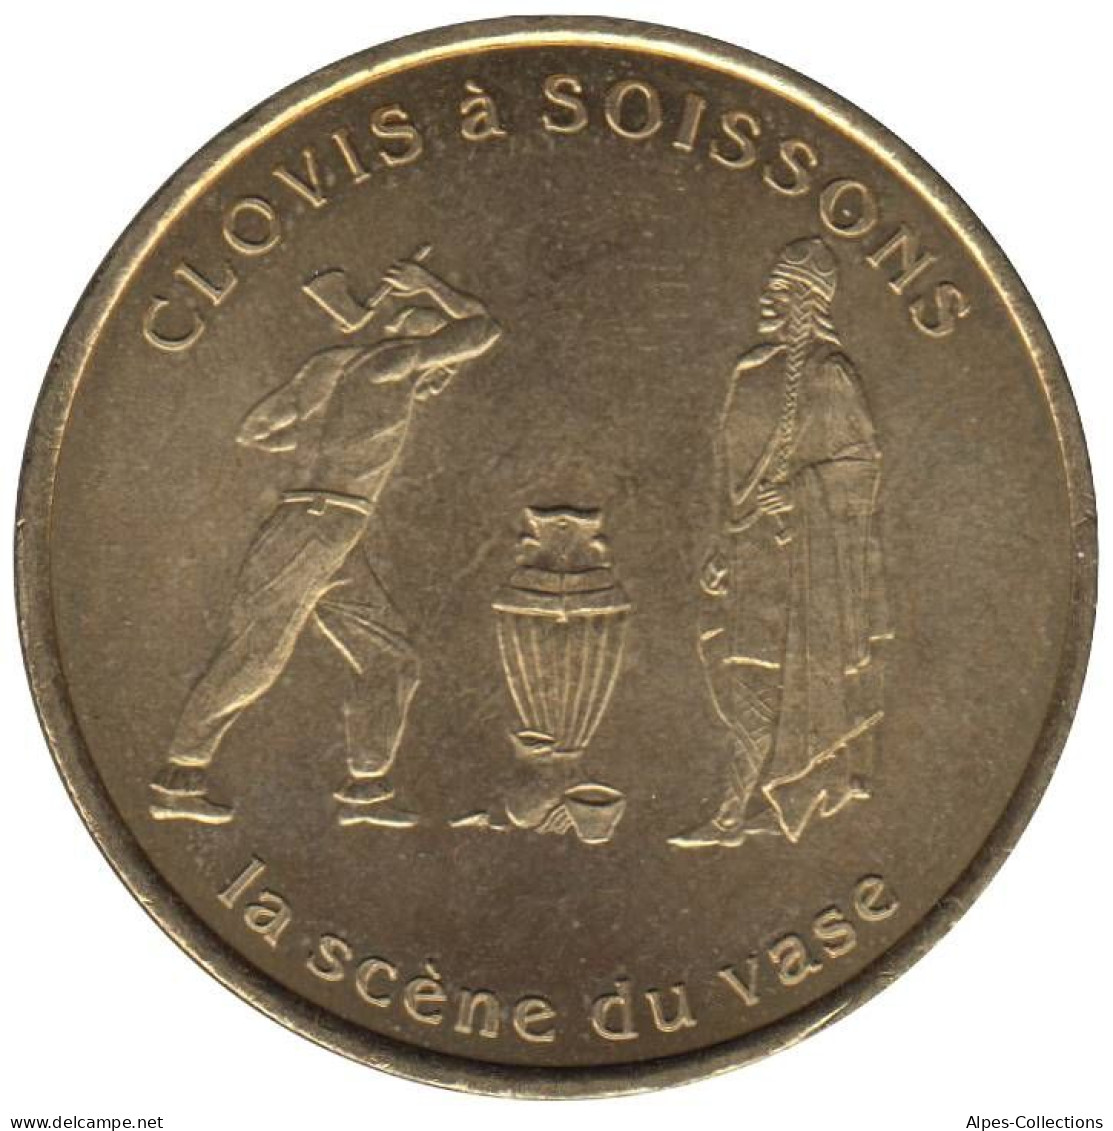 SOISSONS - EU0010.2 - 1 EURO DES VILLES - Réf: T391 - 1997 - Euro Delle Città